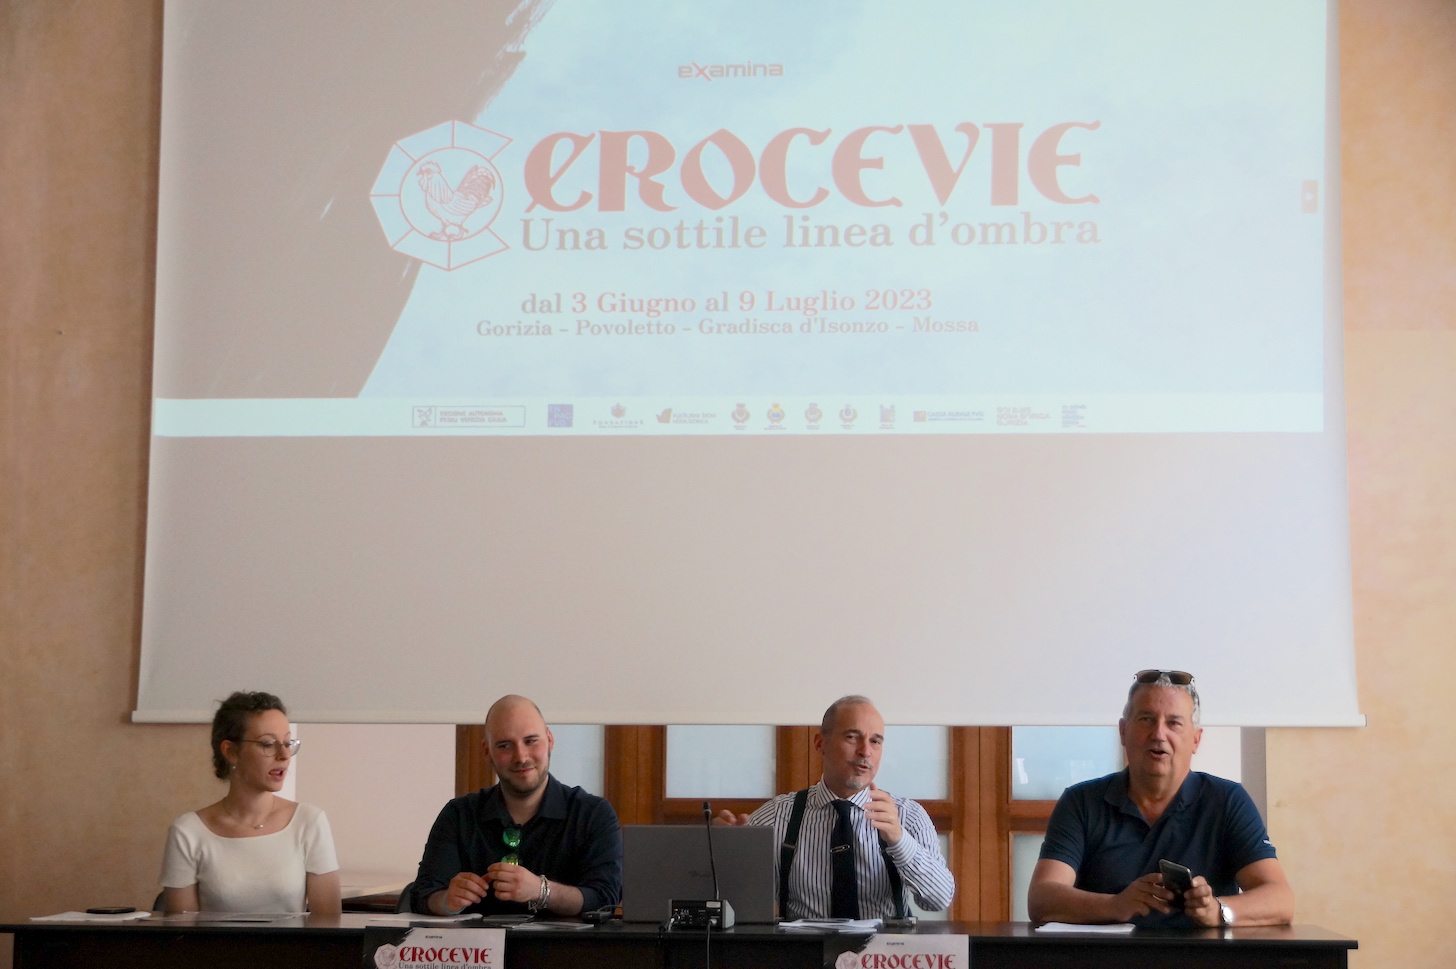 Libri gialli, musica ed enogastronomia: ritorna il festival Crocevie a Gorizia